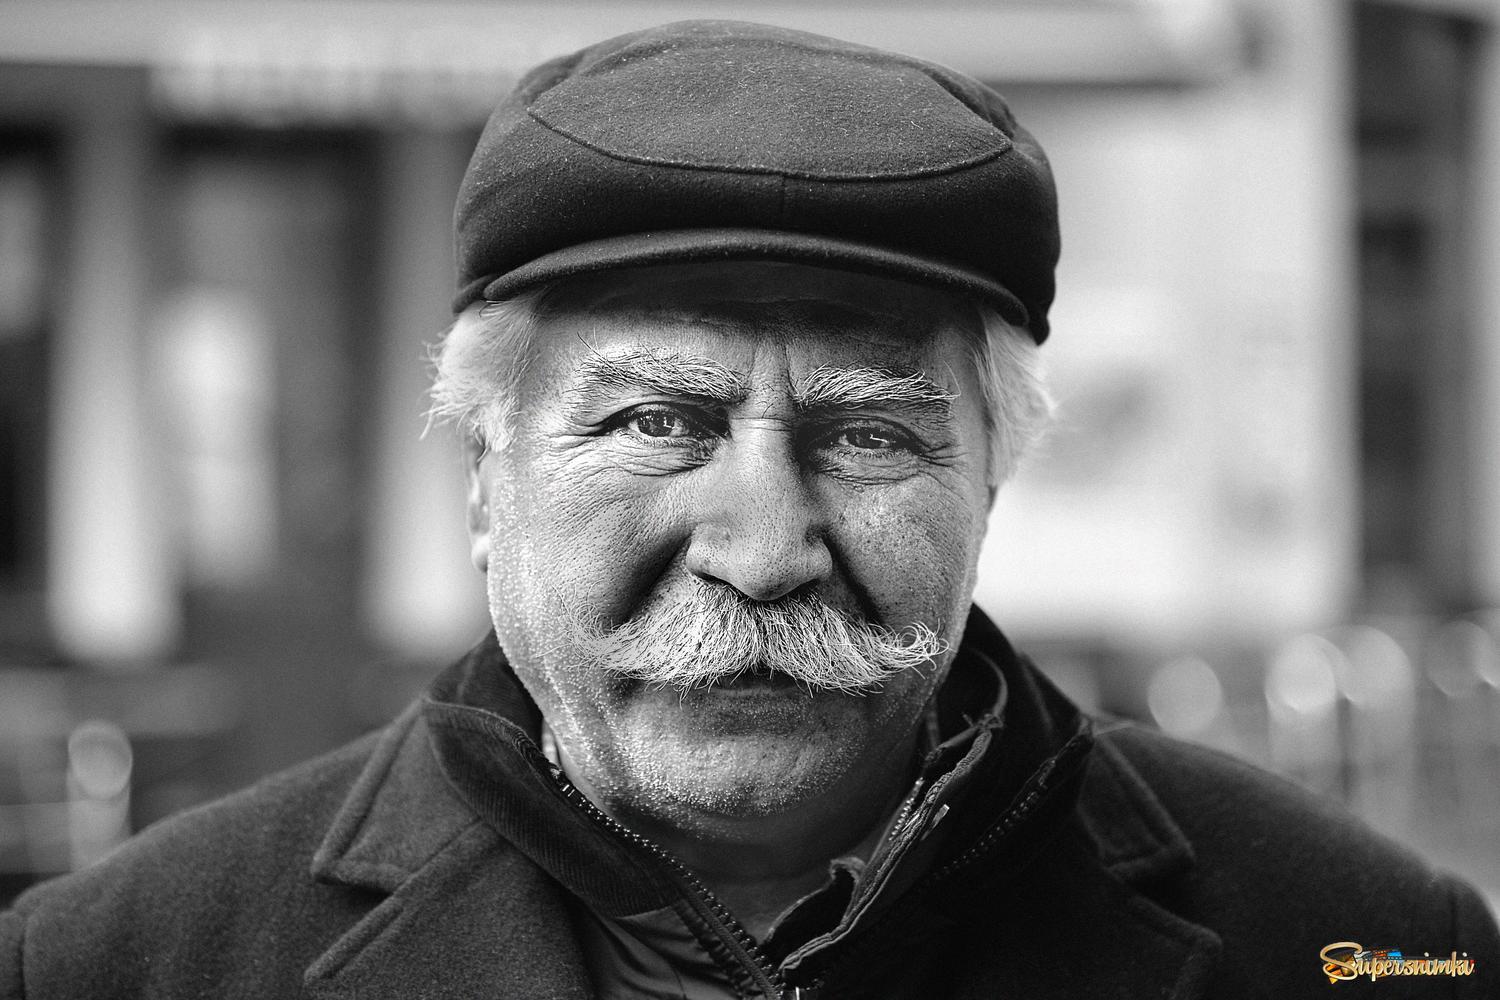 Old Turkish man.